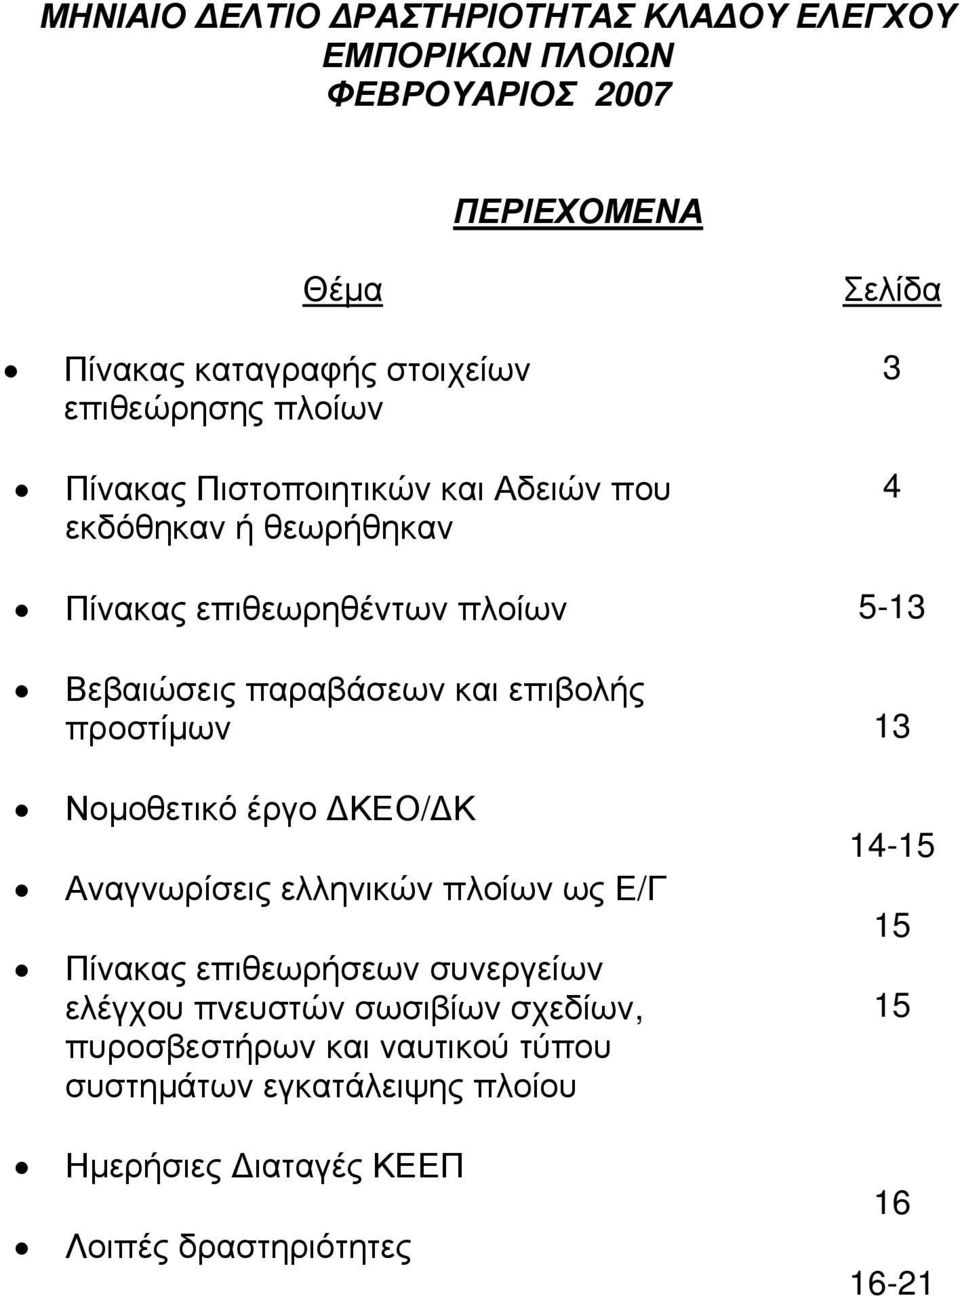 επιβολής προστίμων 13 Νομοθετικό έργο ΔΚΕΟ/ΔΚ Αναγνωρίσεις ελληνικών πλοίων ως Ε/Γ Πίνακας επιθεωρήσεων συνεργείων ελέγχου πνευστών